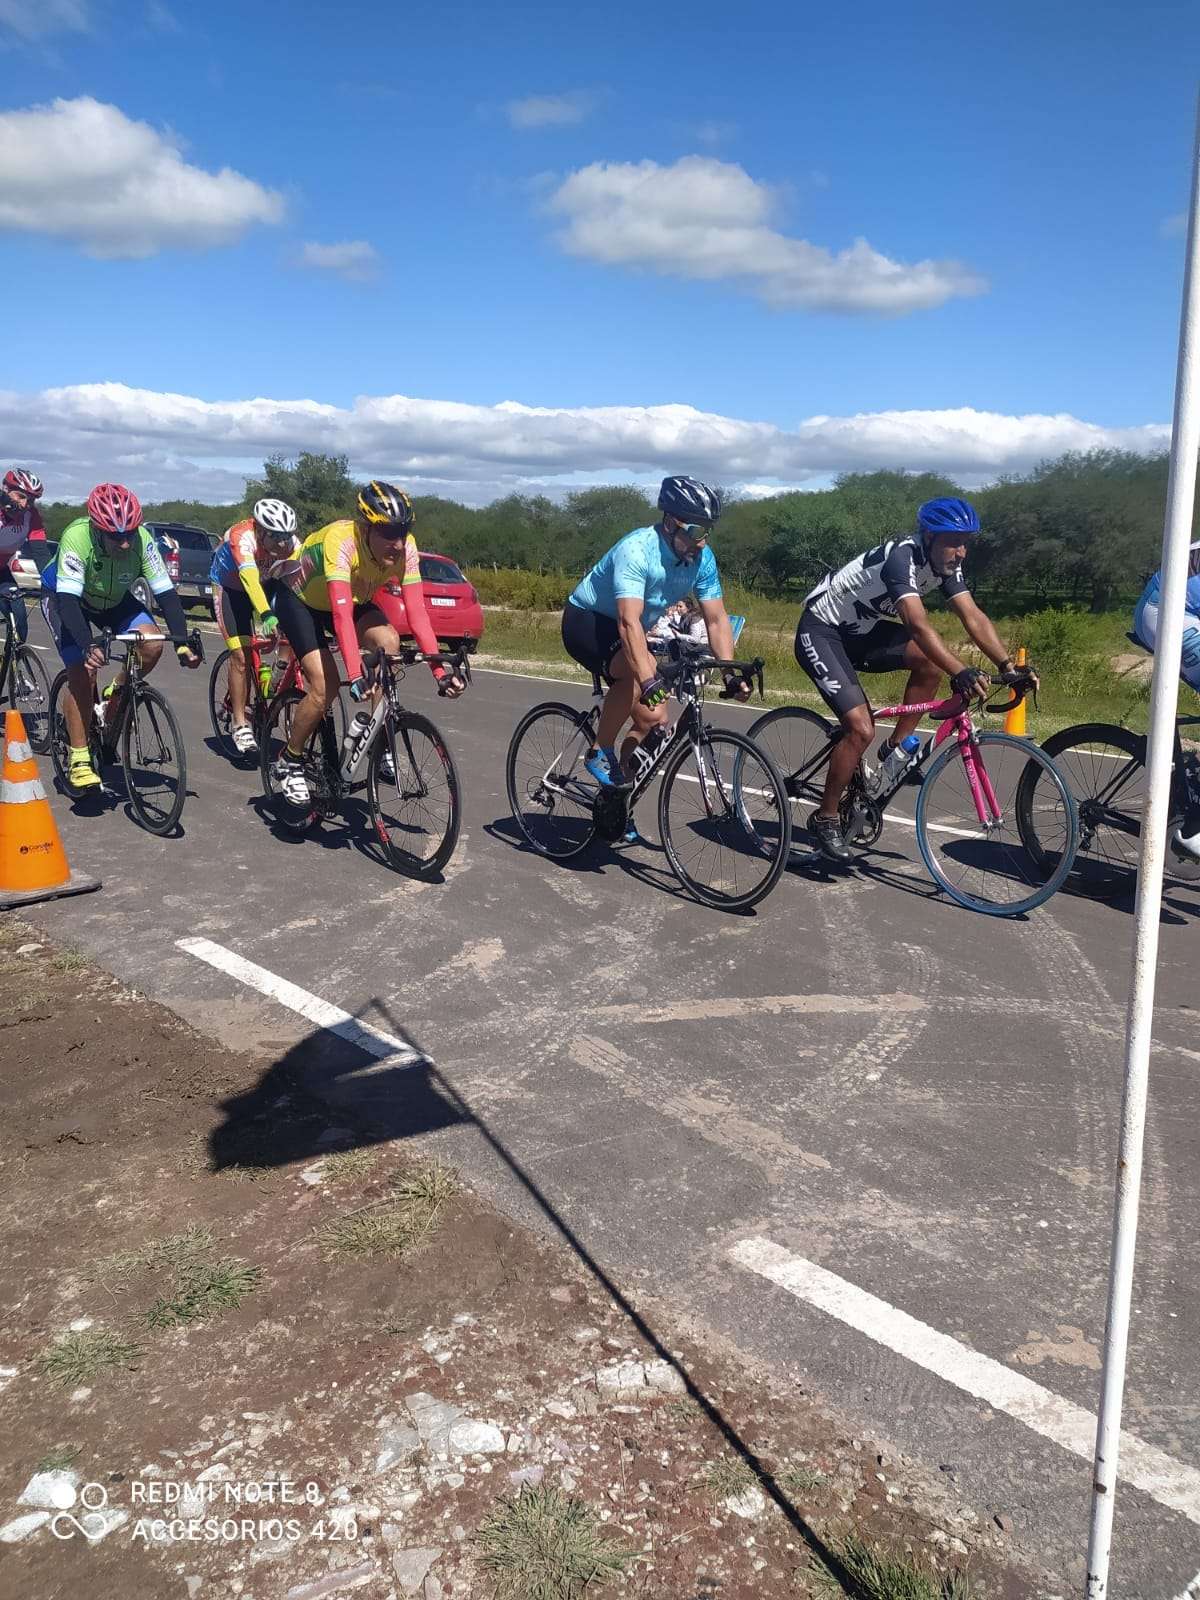 Un buen número de pedalistas de distintos puntos de la provincia, a los que se sumaron los representantes locales estuvieron presente en el festival pedalístico que se realizó en el trazado rutero "Camino a Puerto Ruiz".